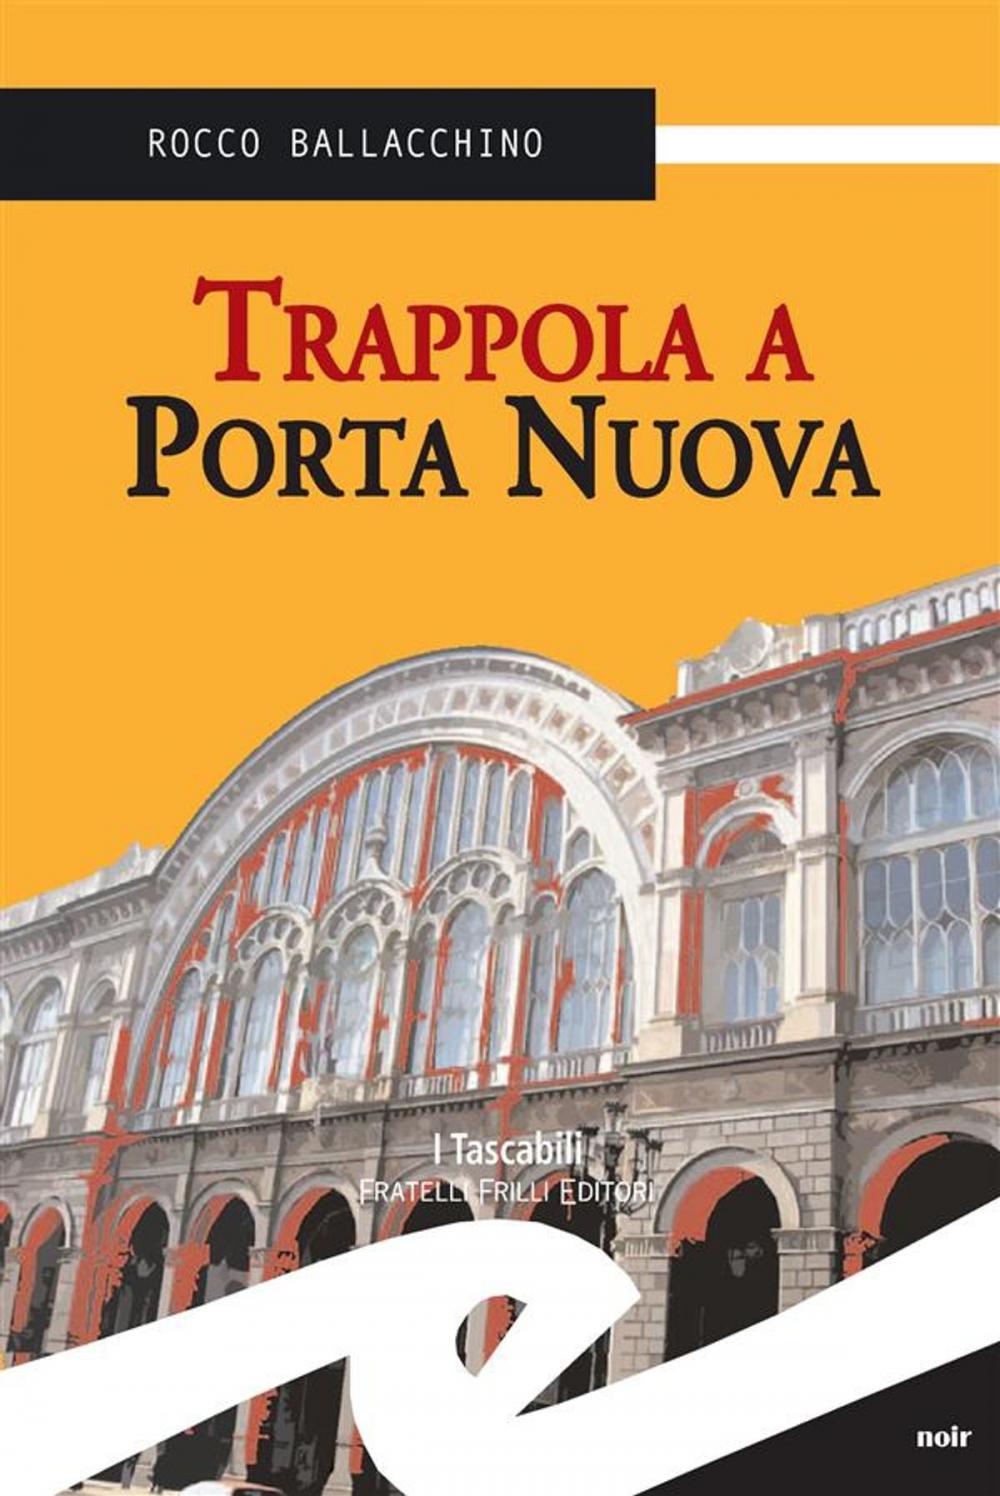 Big bigCover of Trappola a Porta Nuova